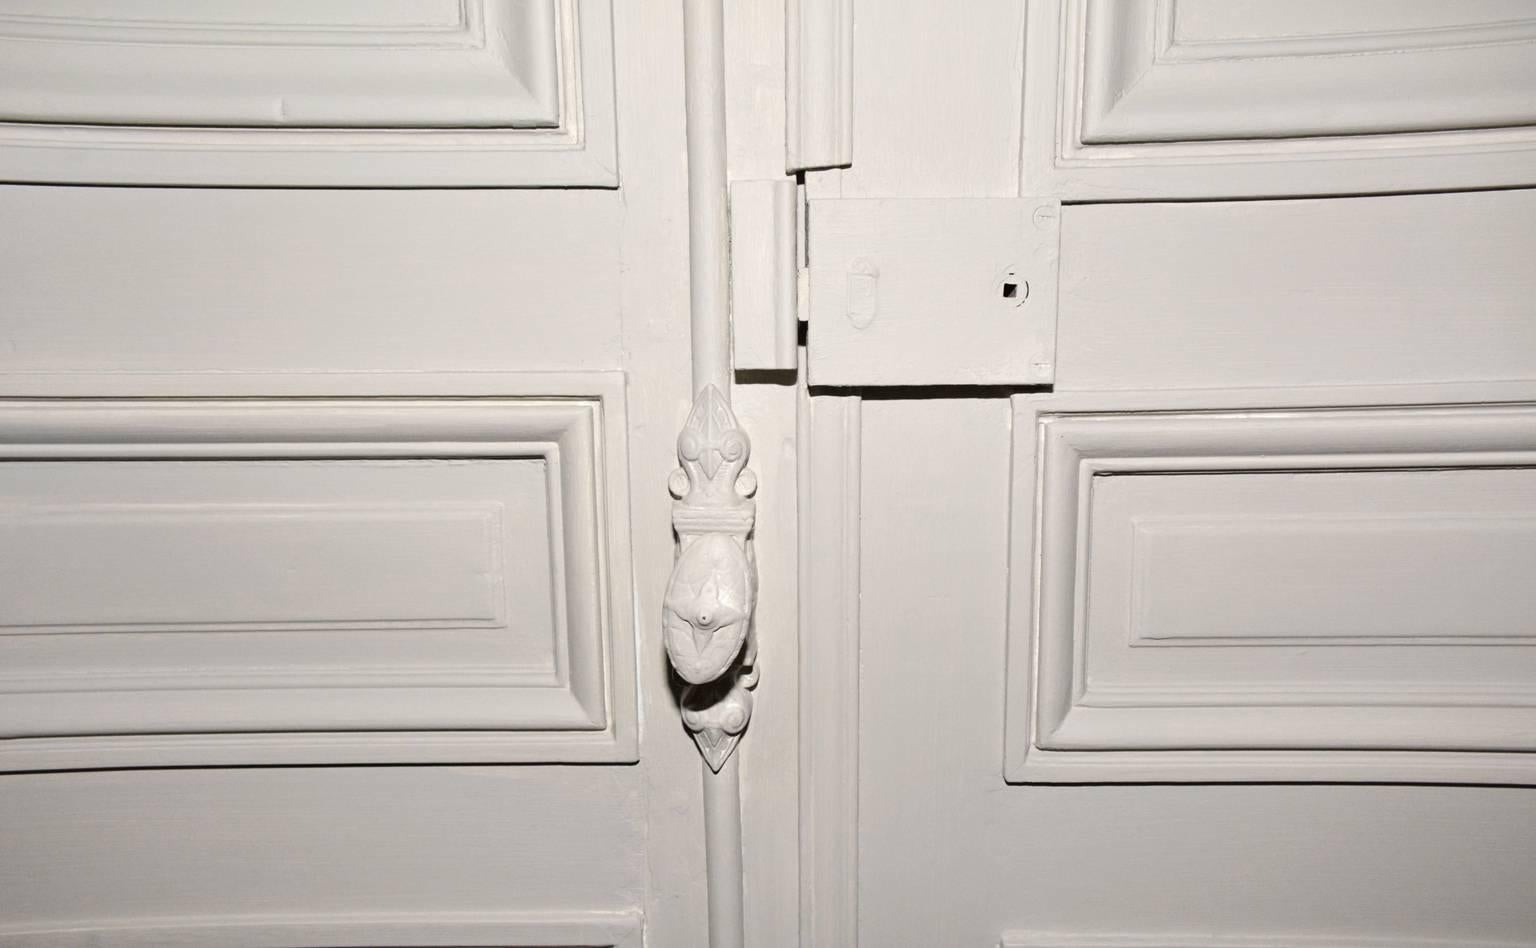 Antike französische Doppeltüren, neu hellgrau gestrichen, obwohl im 19. Jahrhundert hergestellt, ist die Verkleidung im neoklassizistischen Stil des späten 18. Wunderschöne französische Cremone-Beschläge. Drei Paare verfügbar.
Die kombinierte Breite